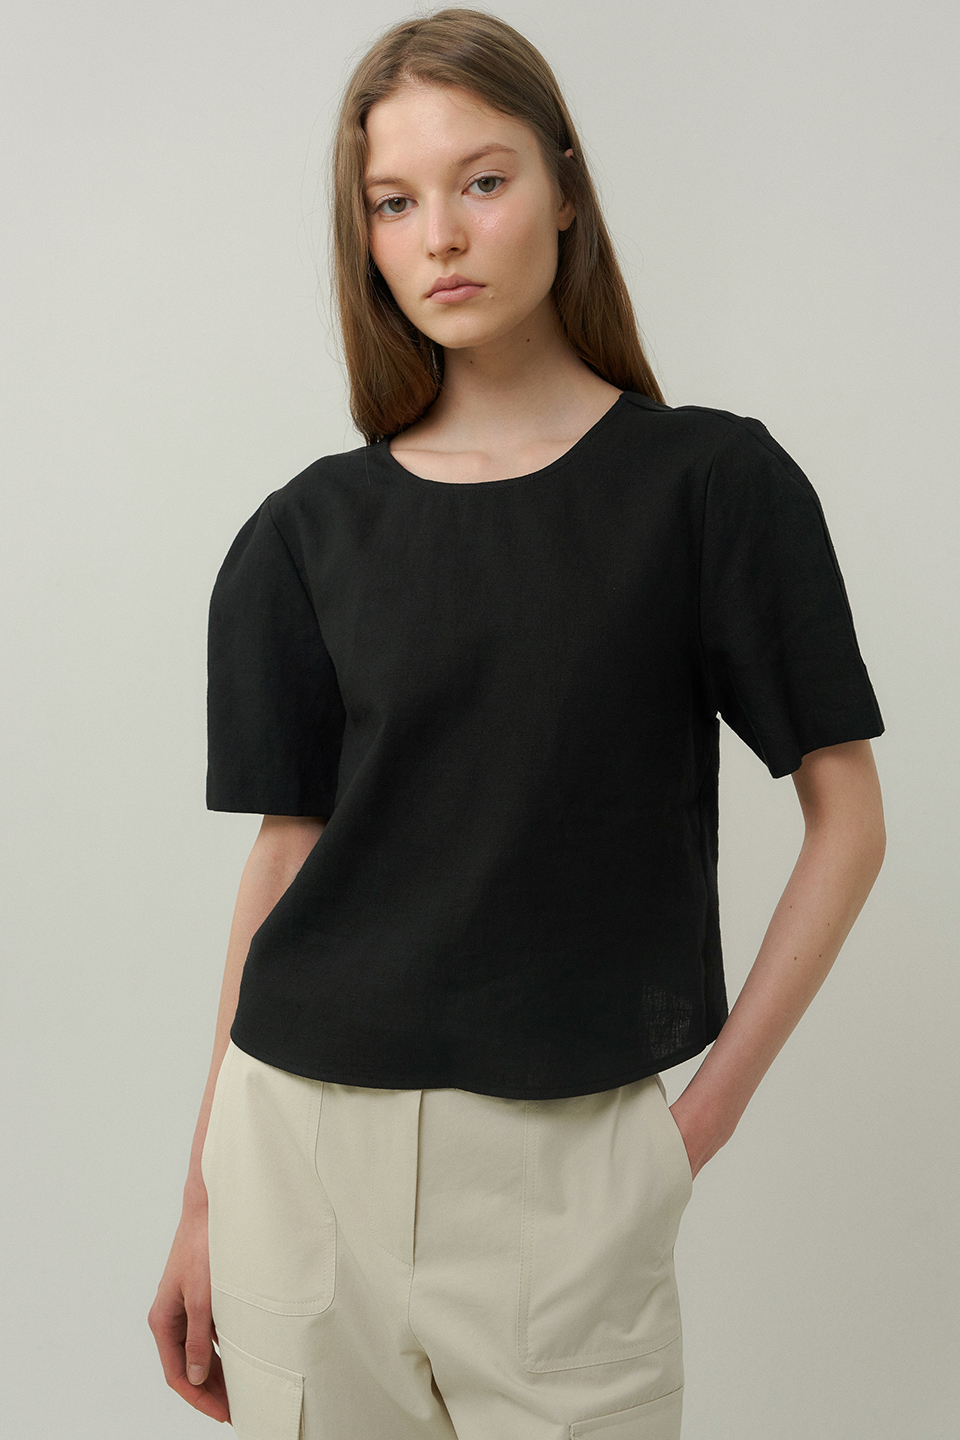 linen cross blouse (black)